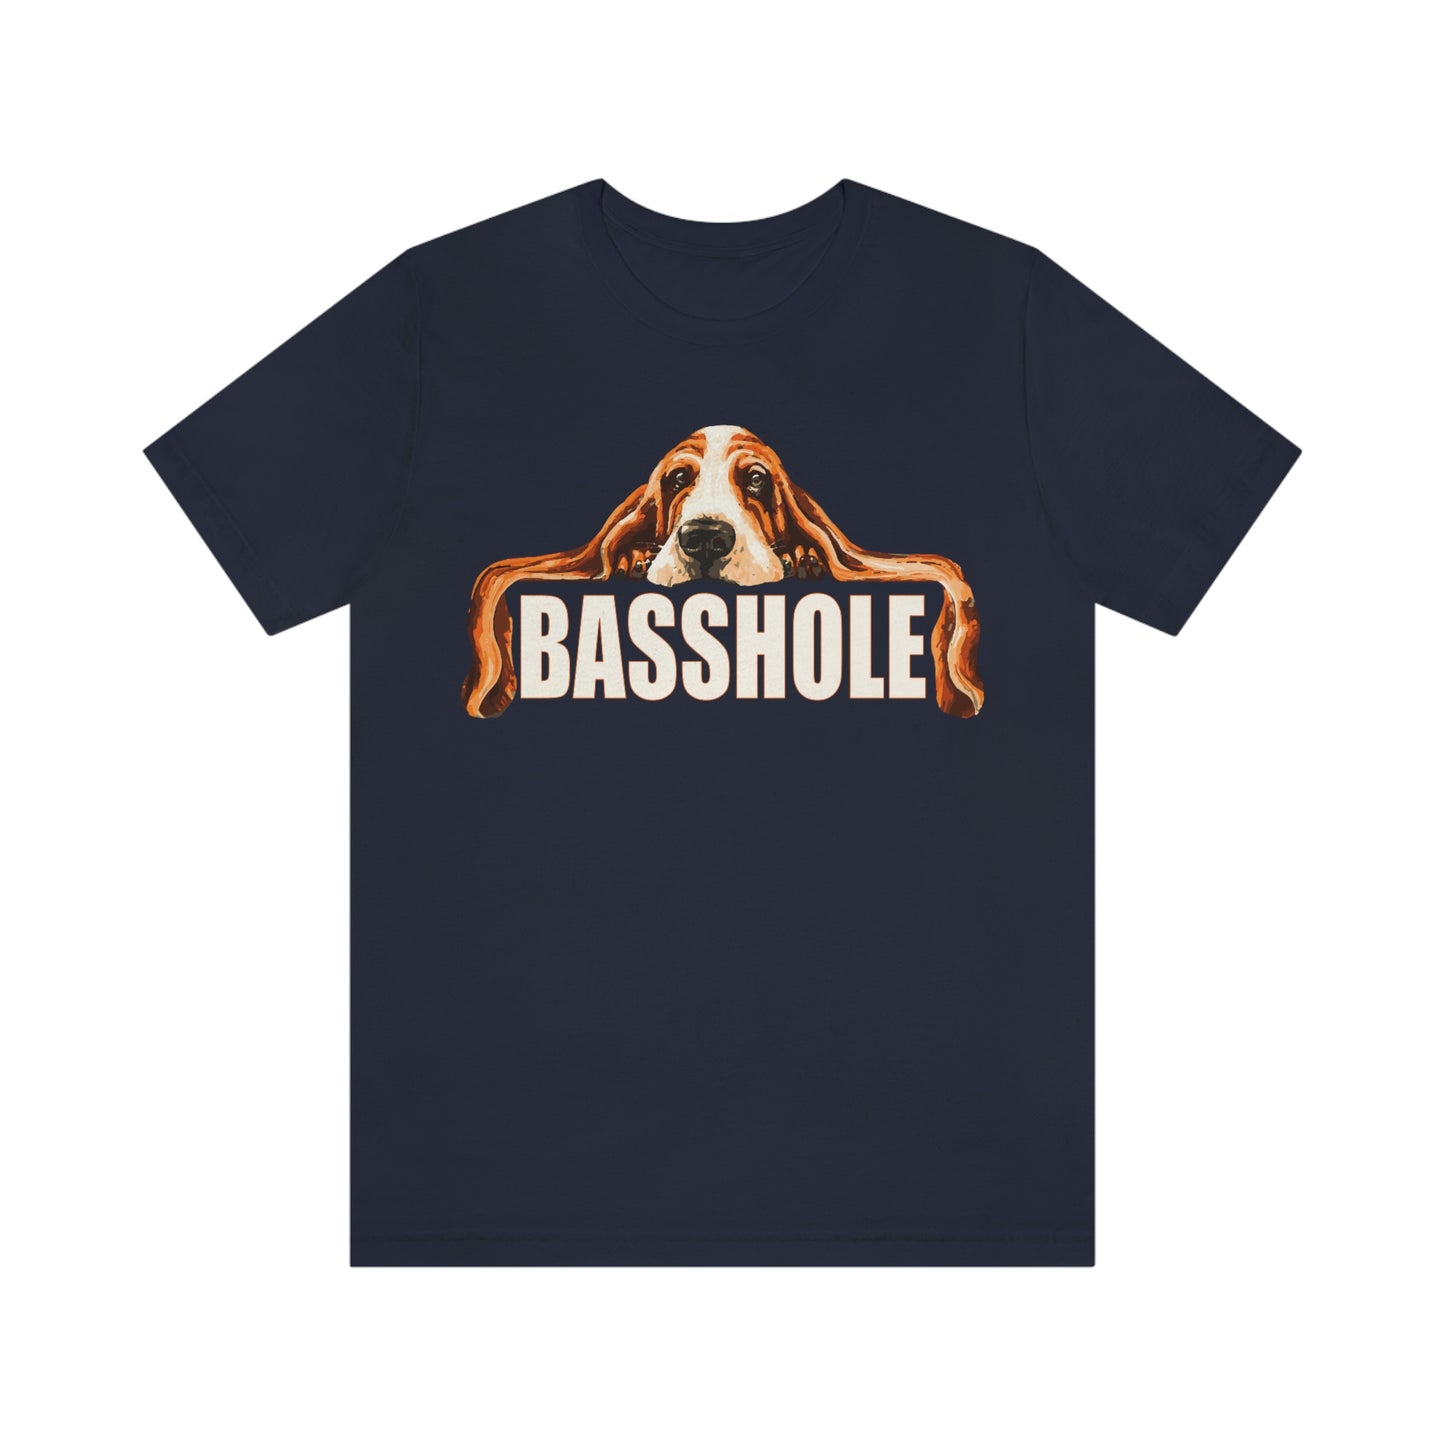 Basshole - Unisex Jersey Short Sleeve Tee